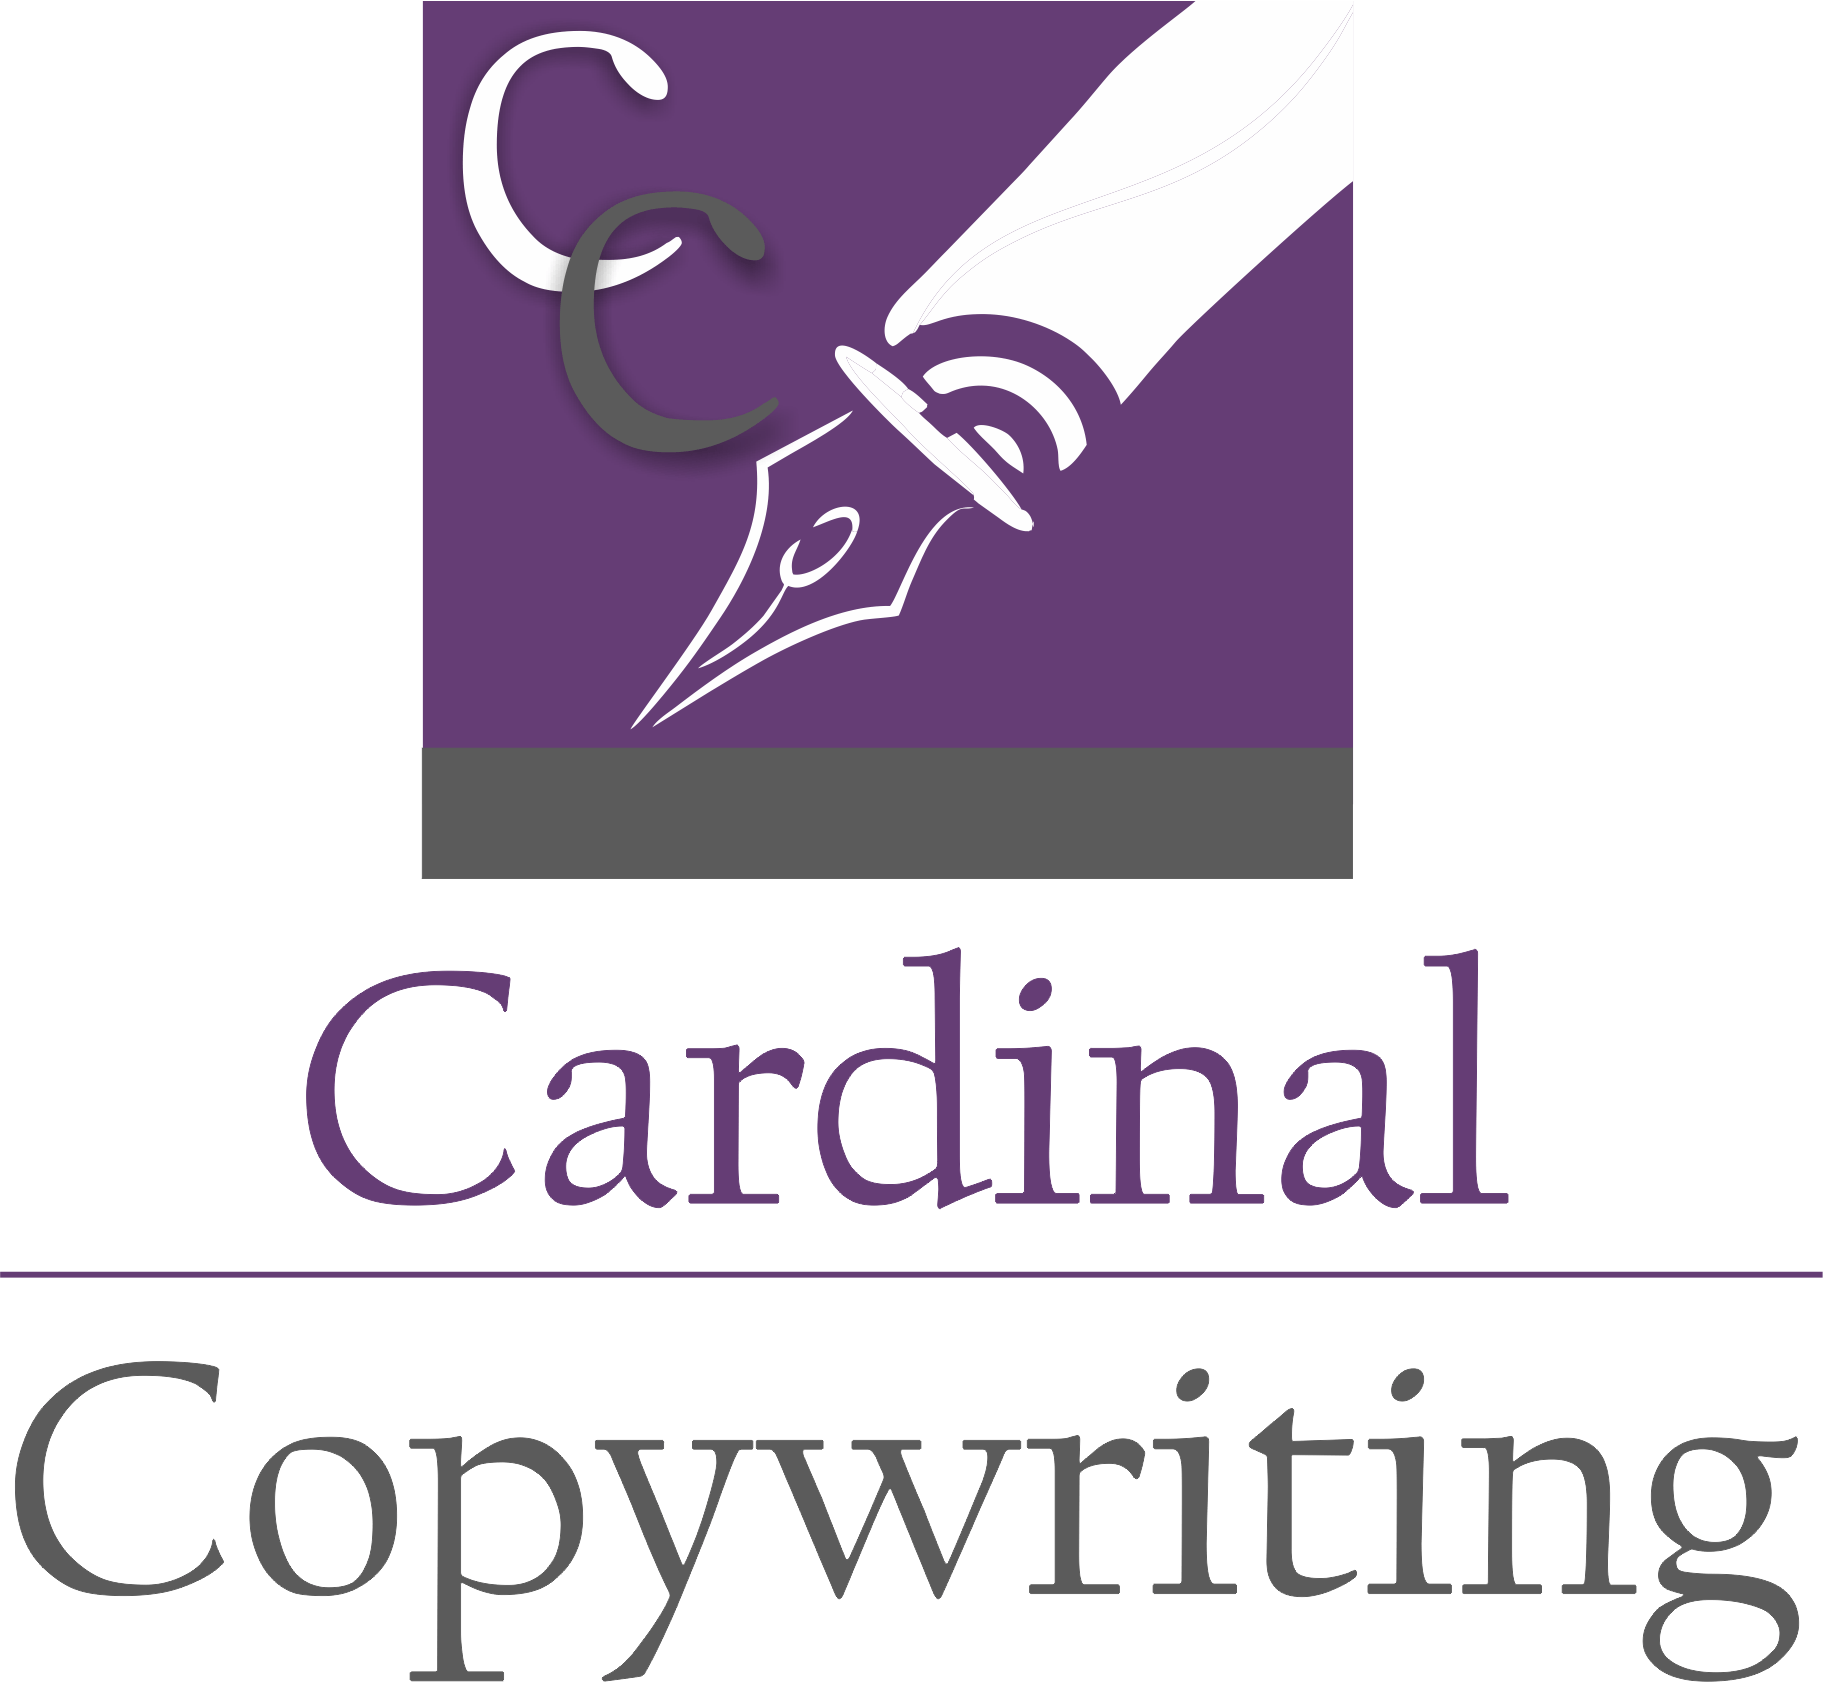 Cardinal Copywriting